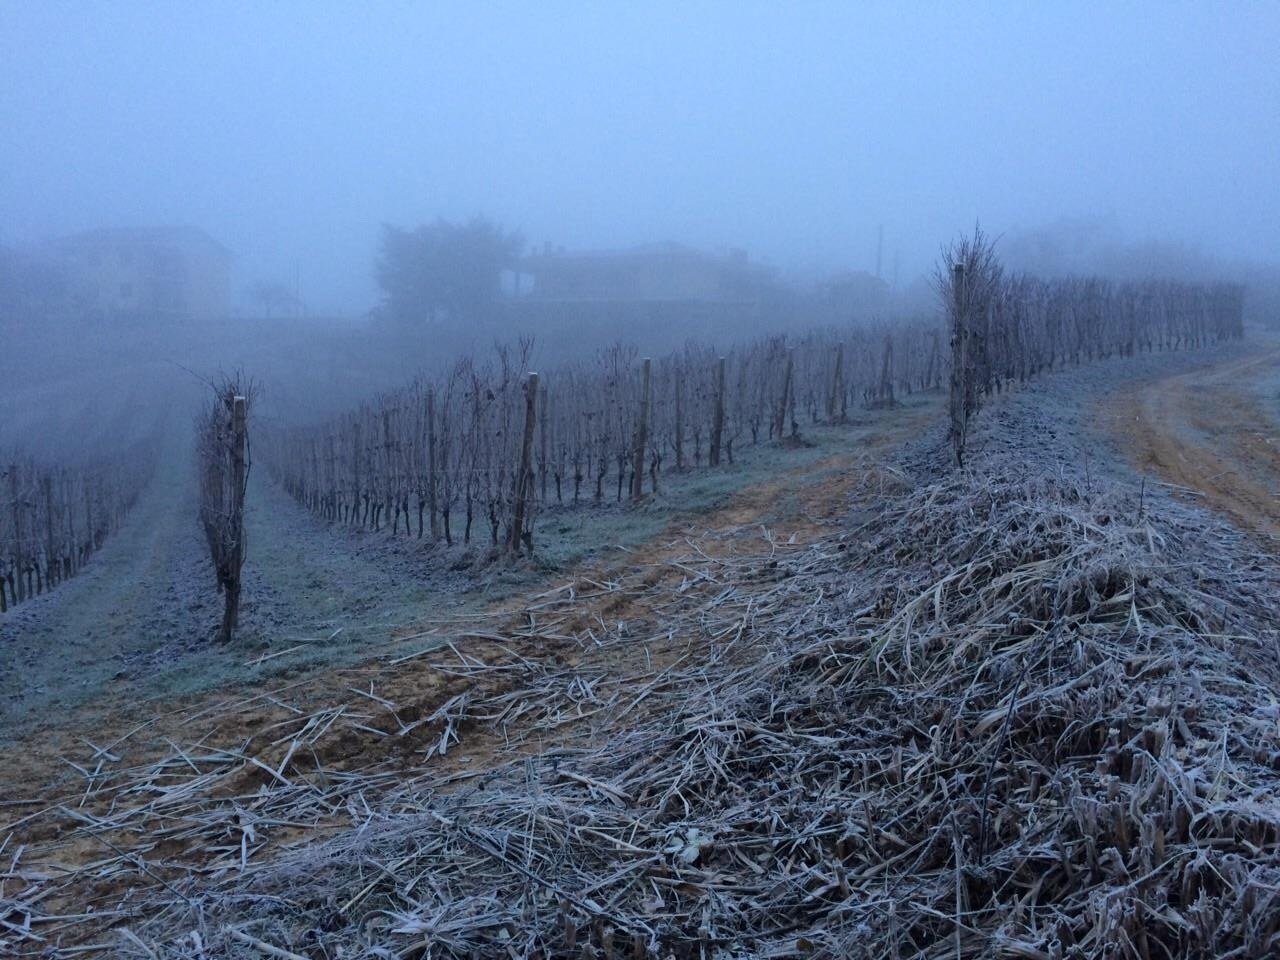 Pelassa_San Vito vineyards_Dec 2014_v2.jpg